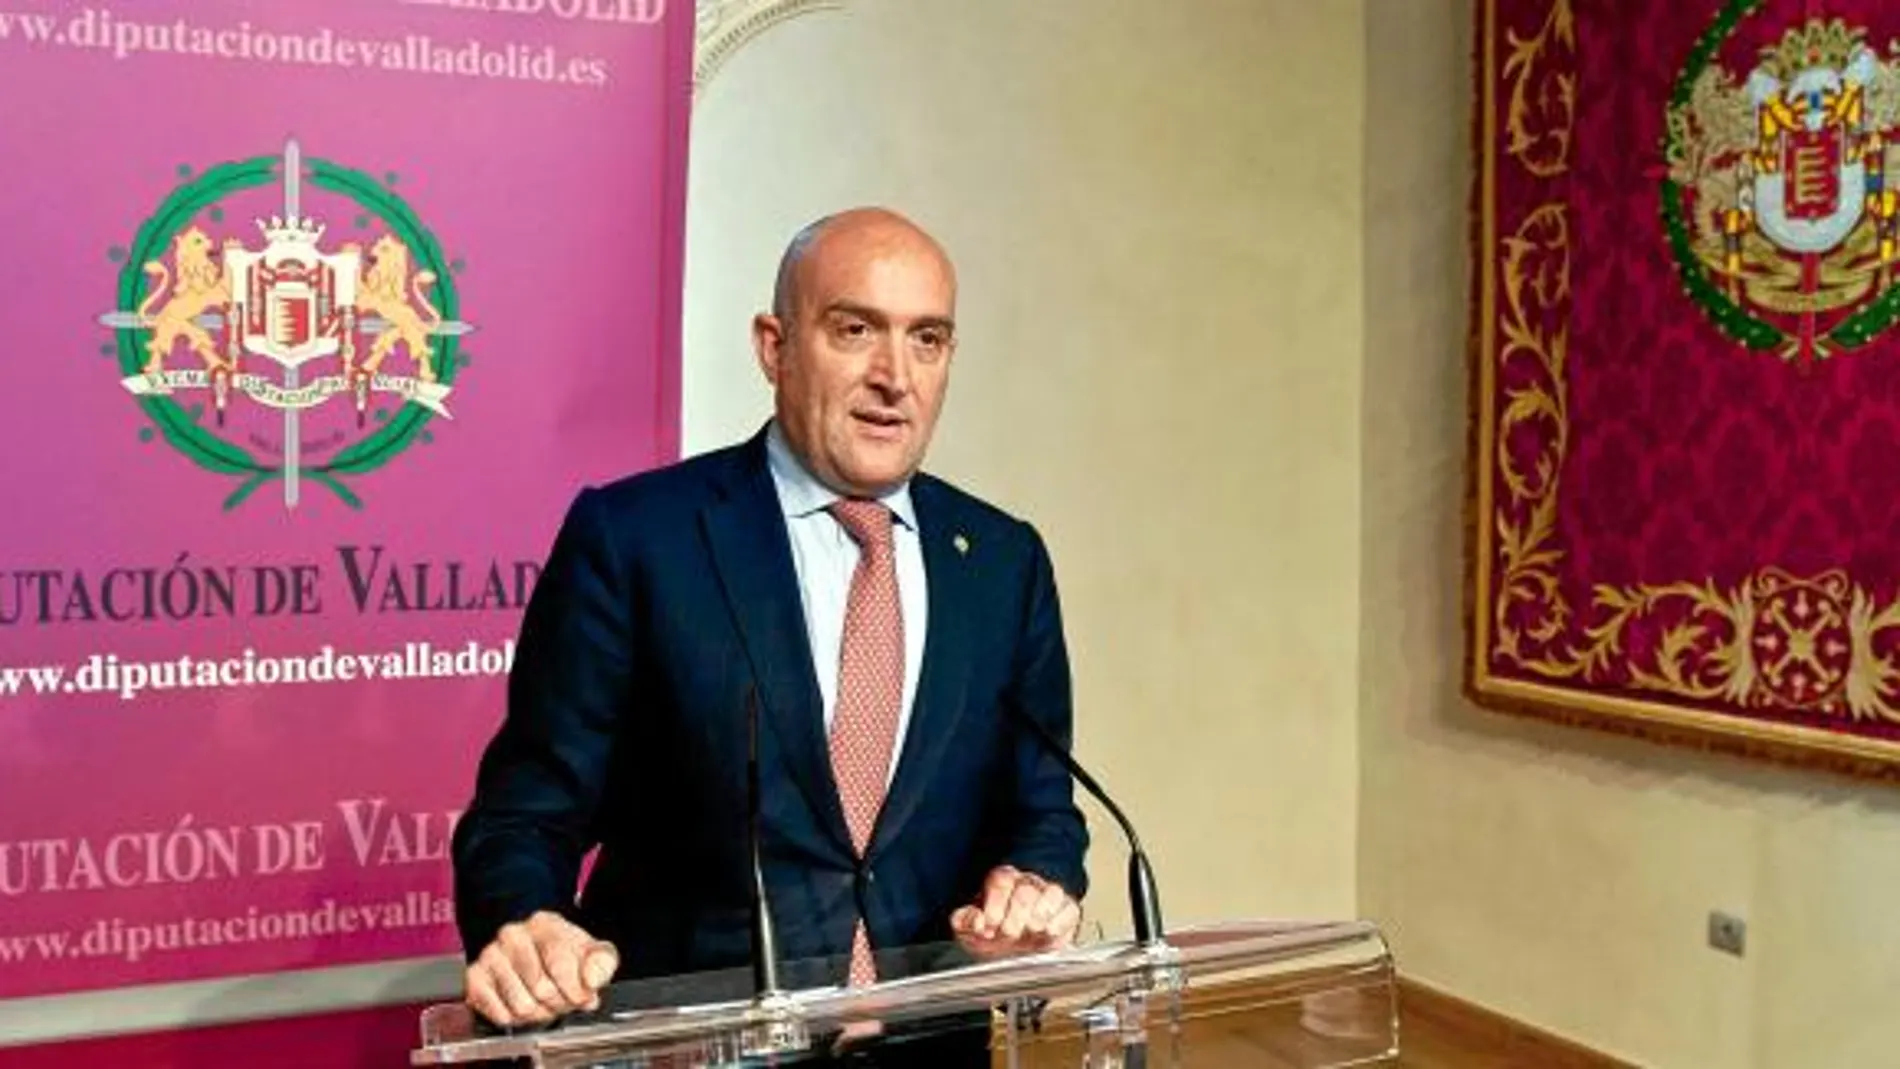 El nuevo presidente de la Diputación de Valladolid, Jesús Julio Carnero, en su primera rueda de prensa, tras asumir el cargo